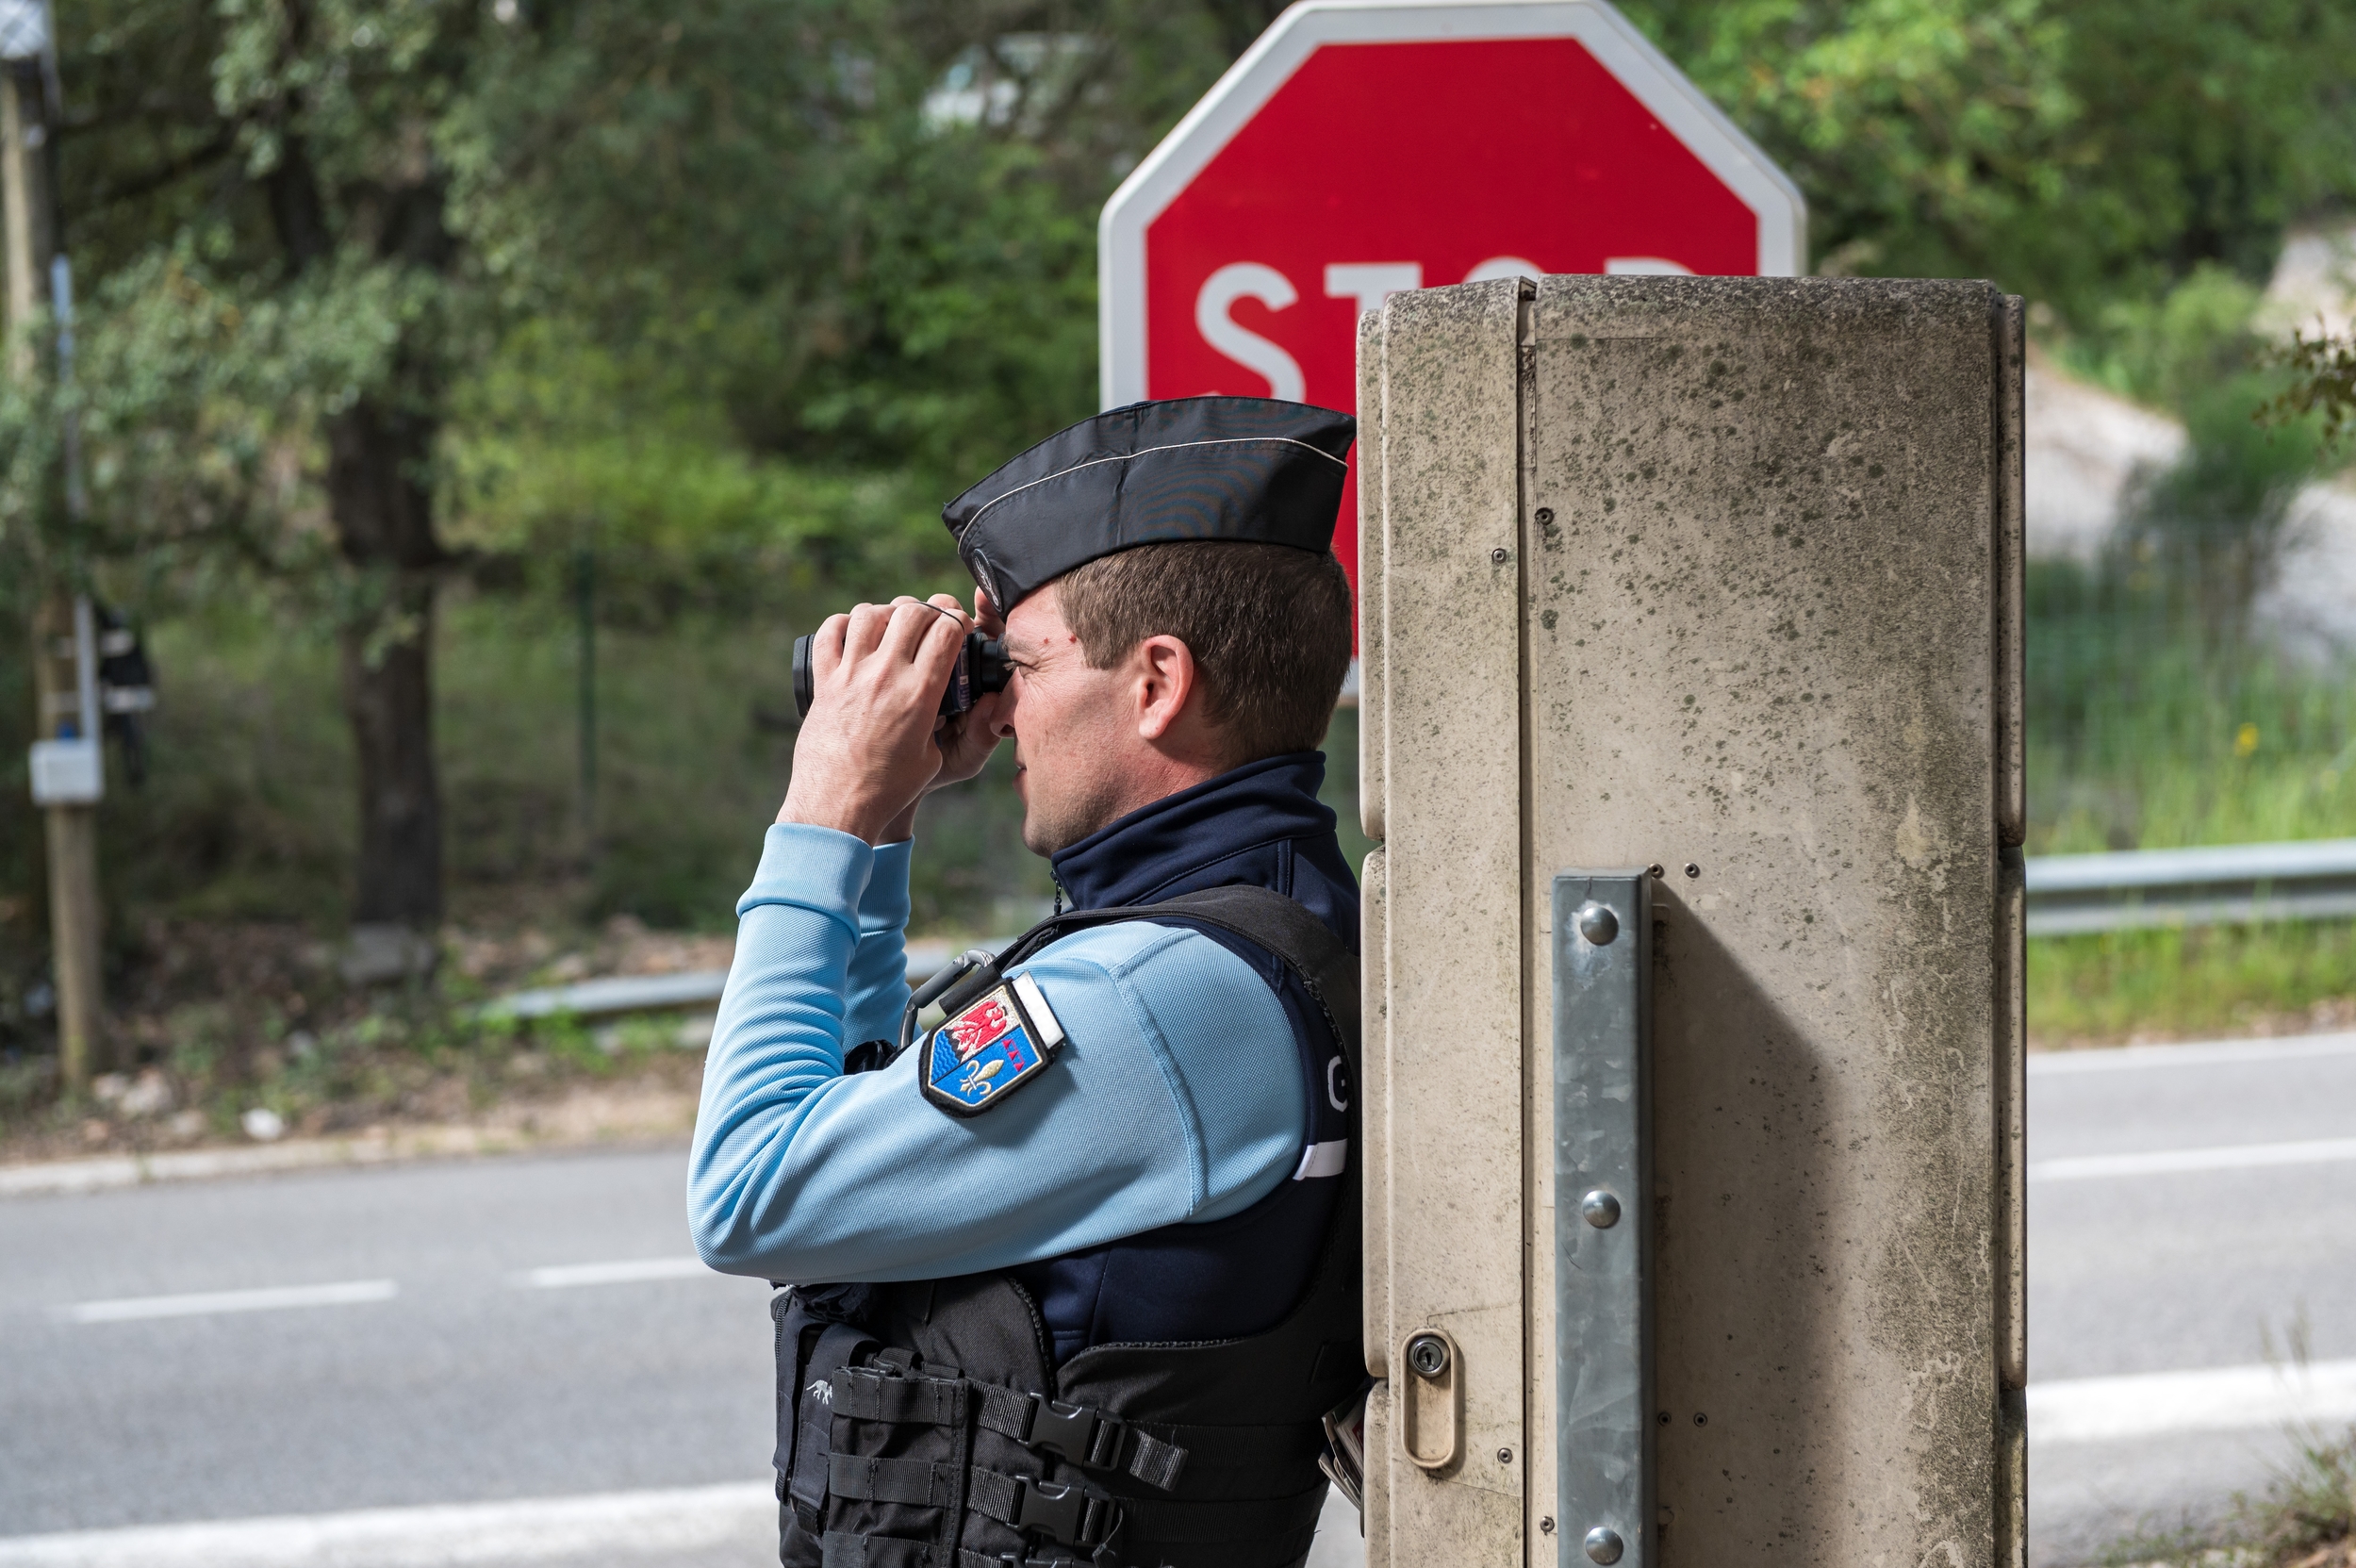 Voici comment les gendarmes utilisent intelligemment Waze pour leurs contrôles routiers